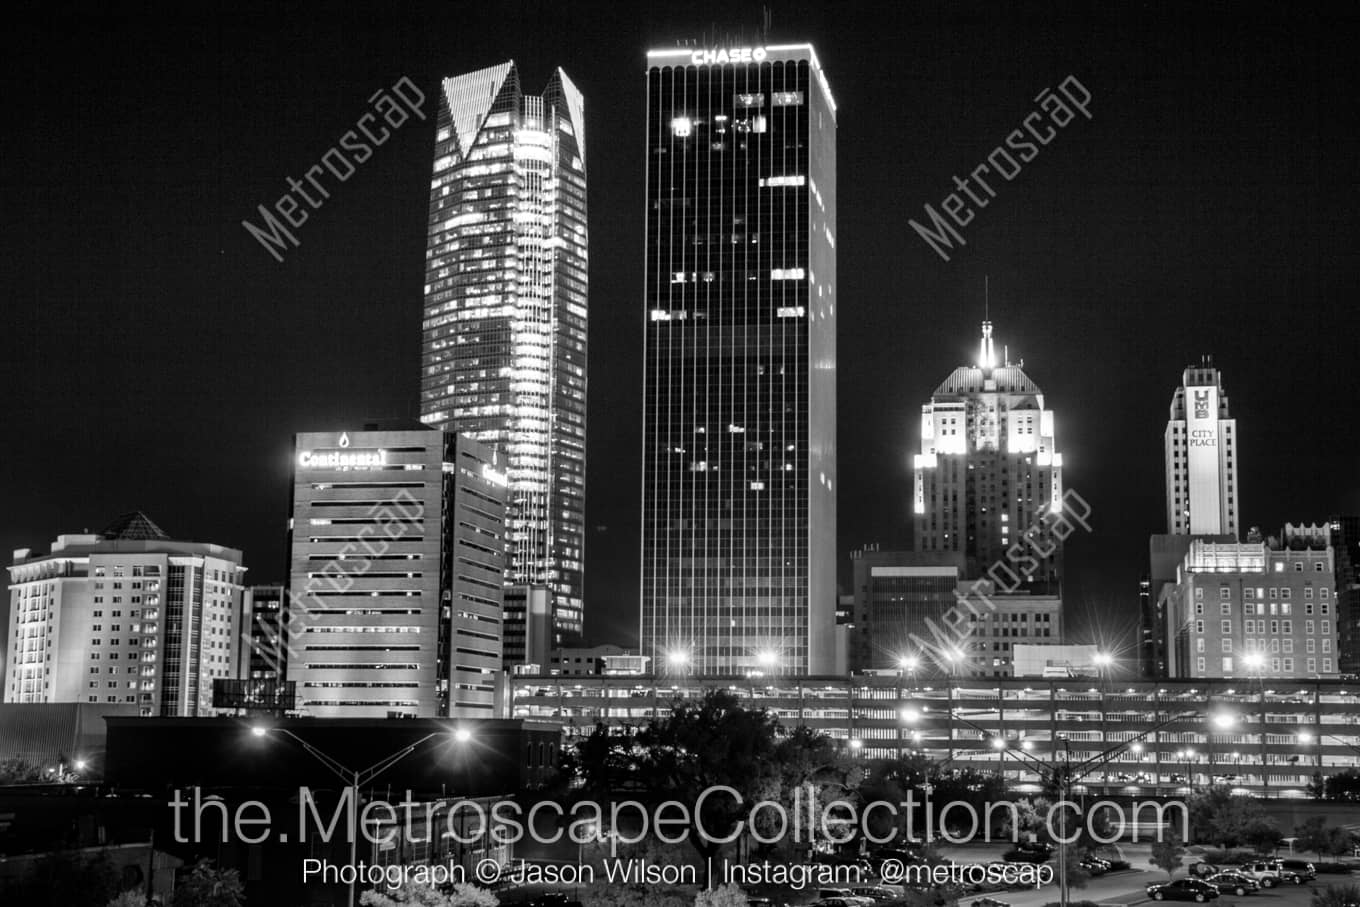 Oklahoma City Oklahoma Picture at Night